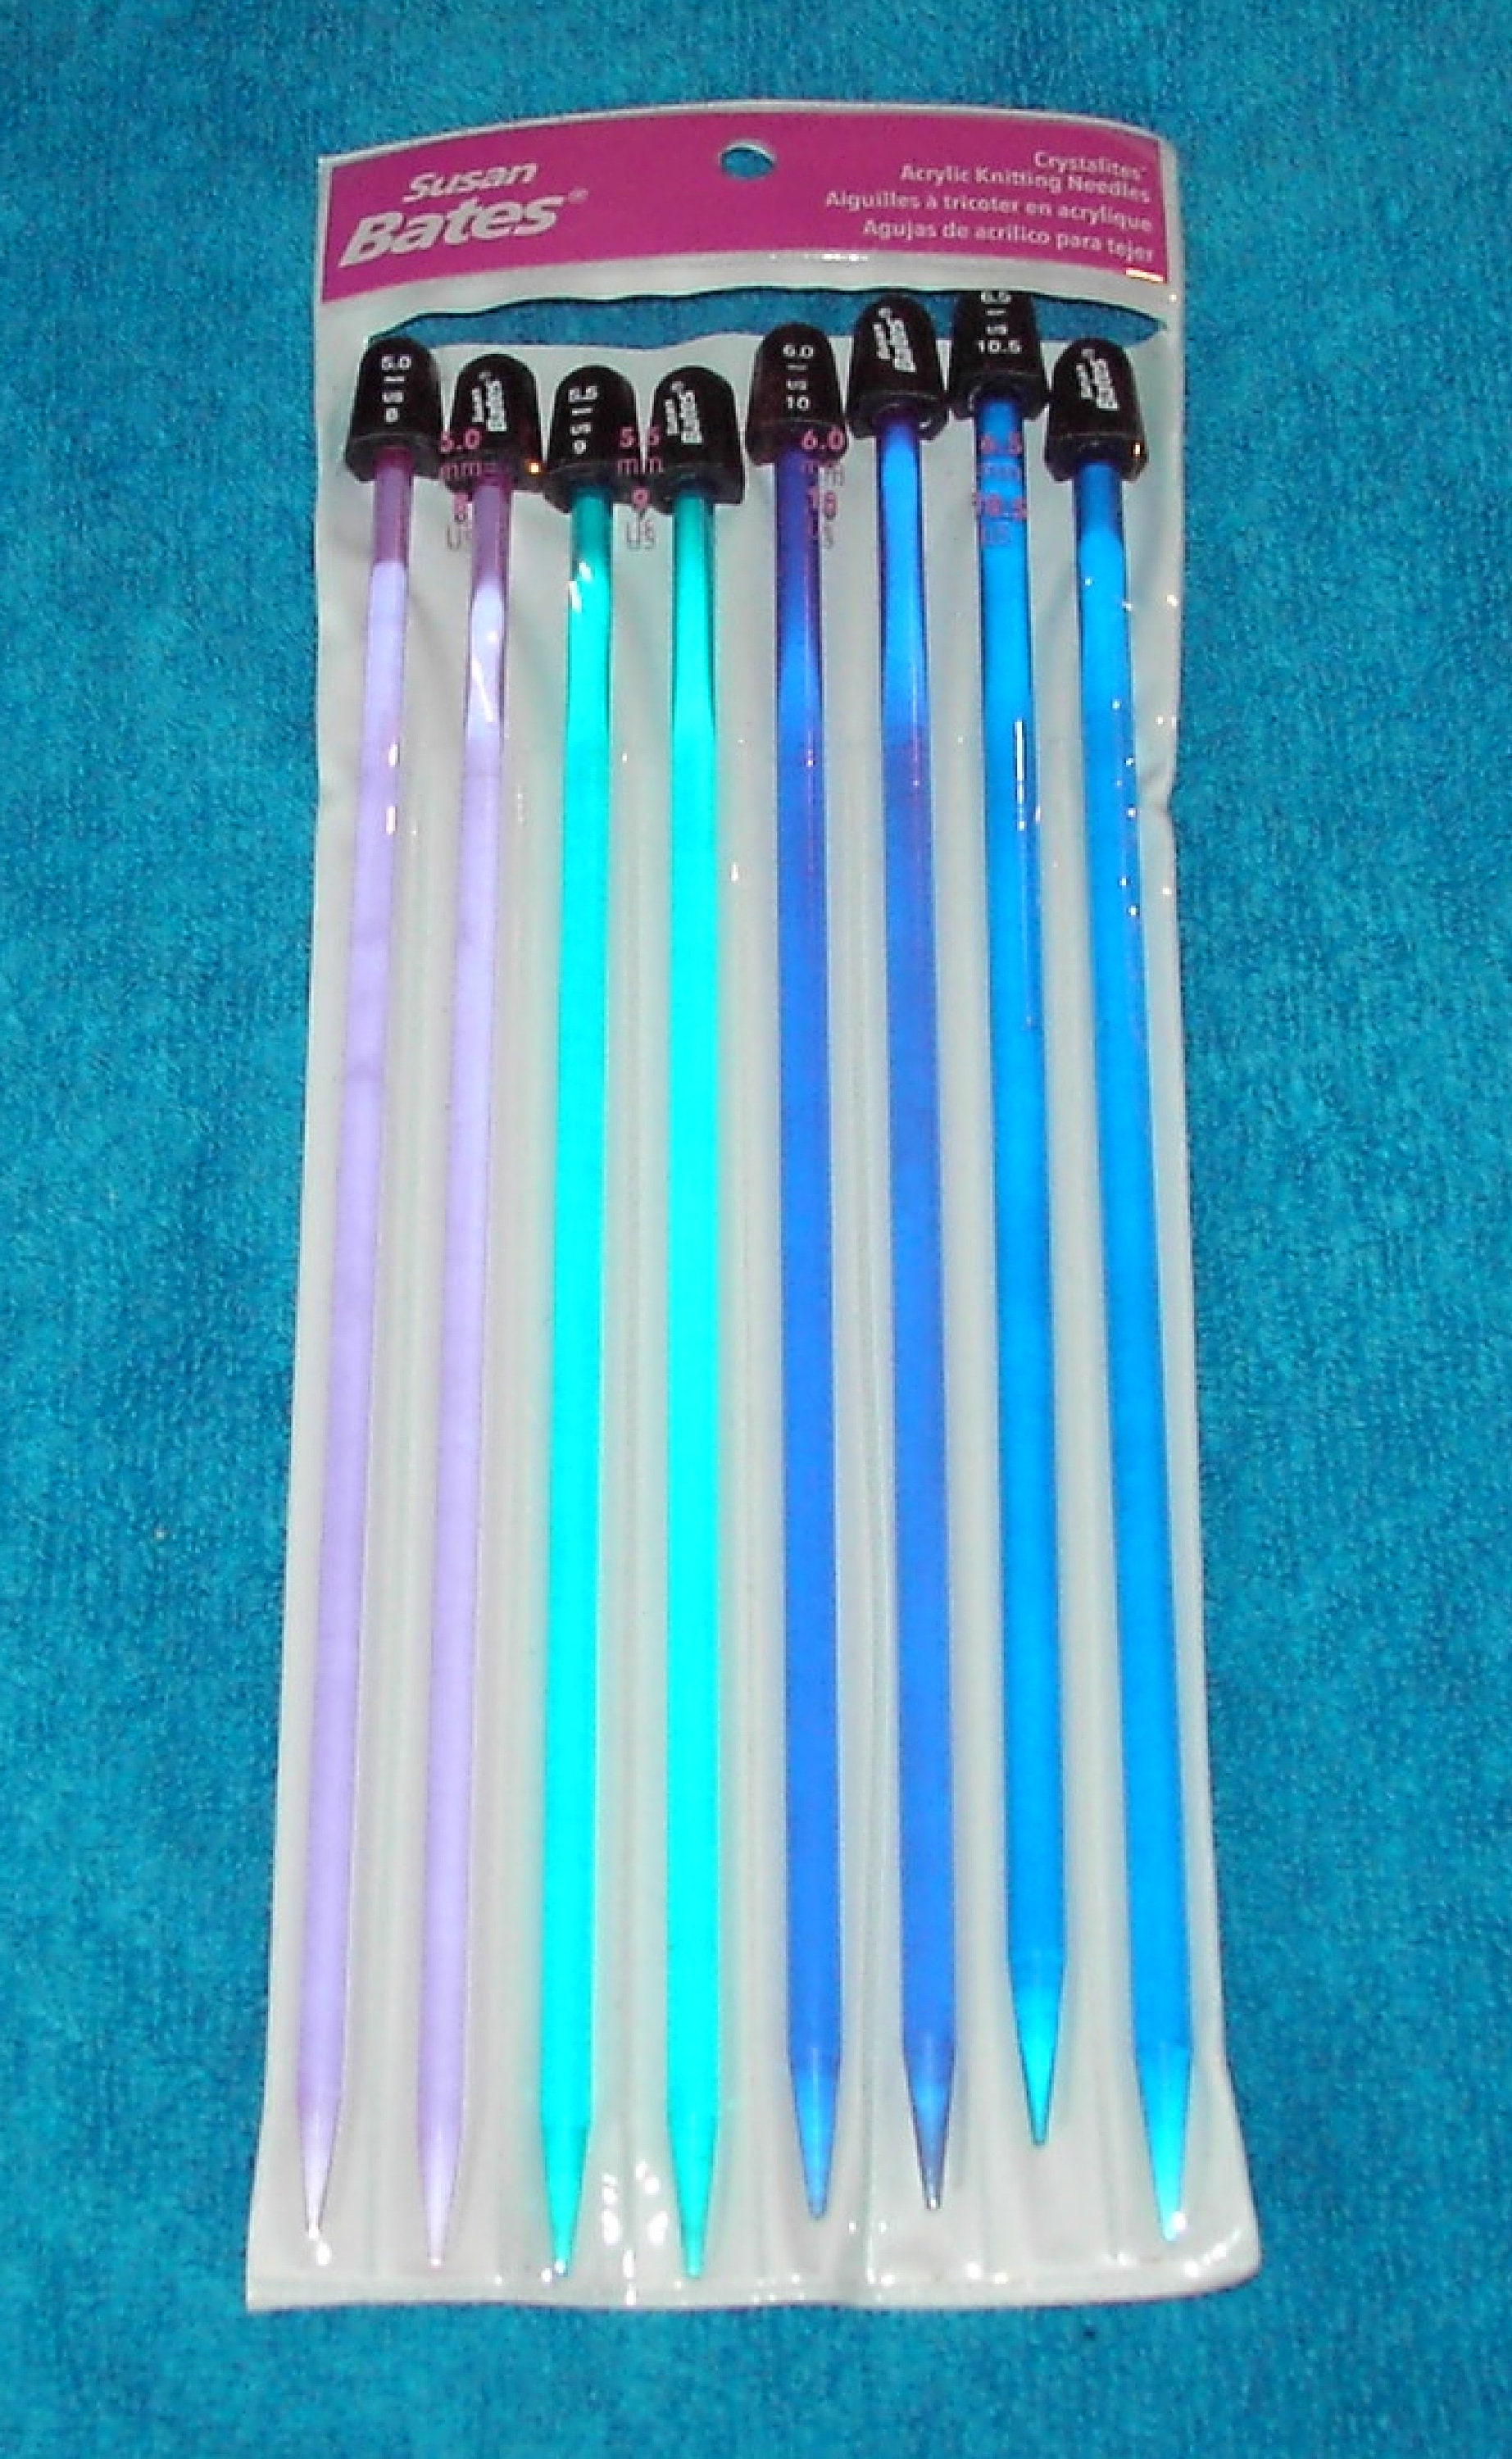 Susan Bates Crystalites Acrylic 10-Inch Knitting Needle Set